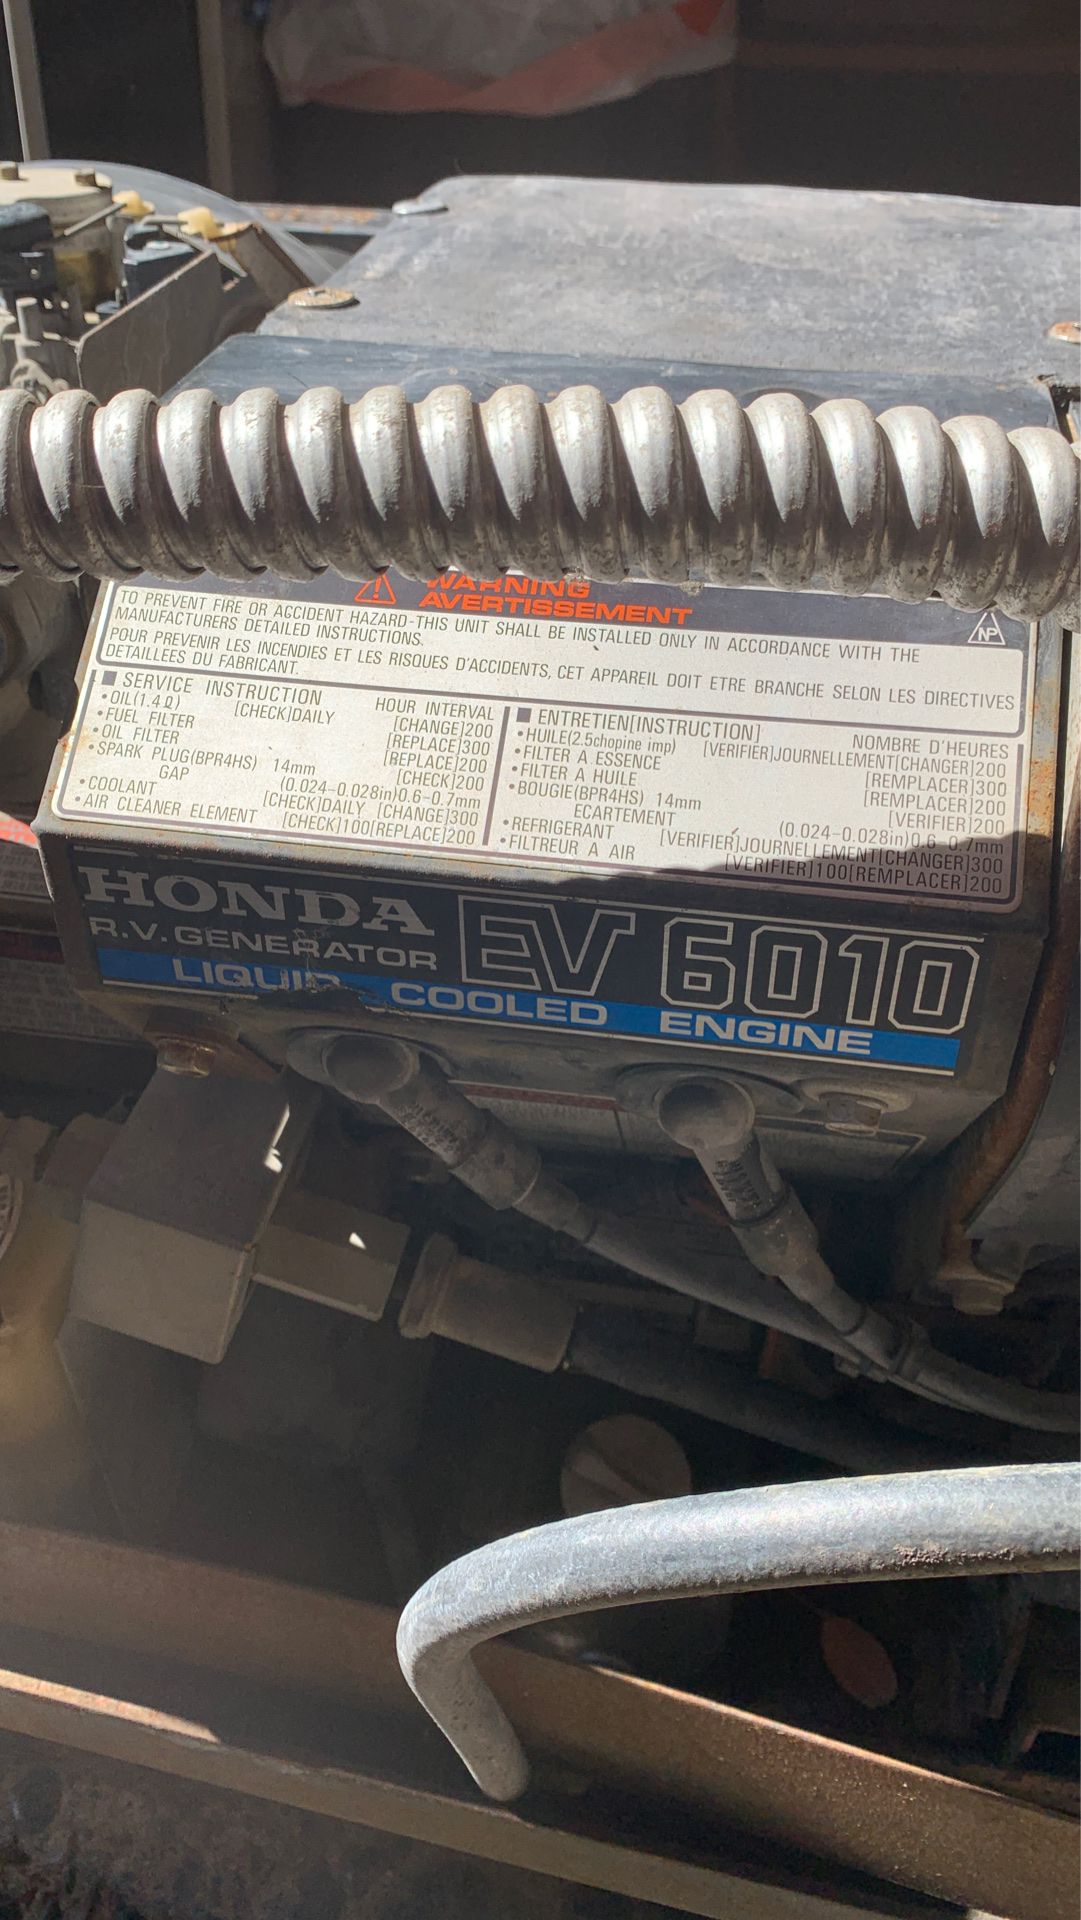 Honda rv generator ev6010